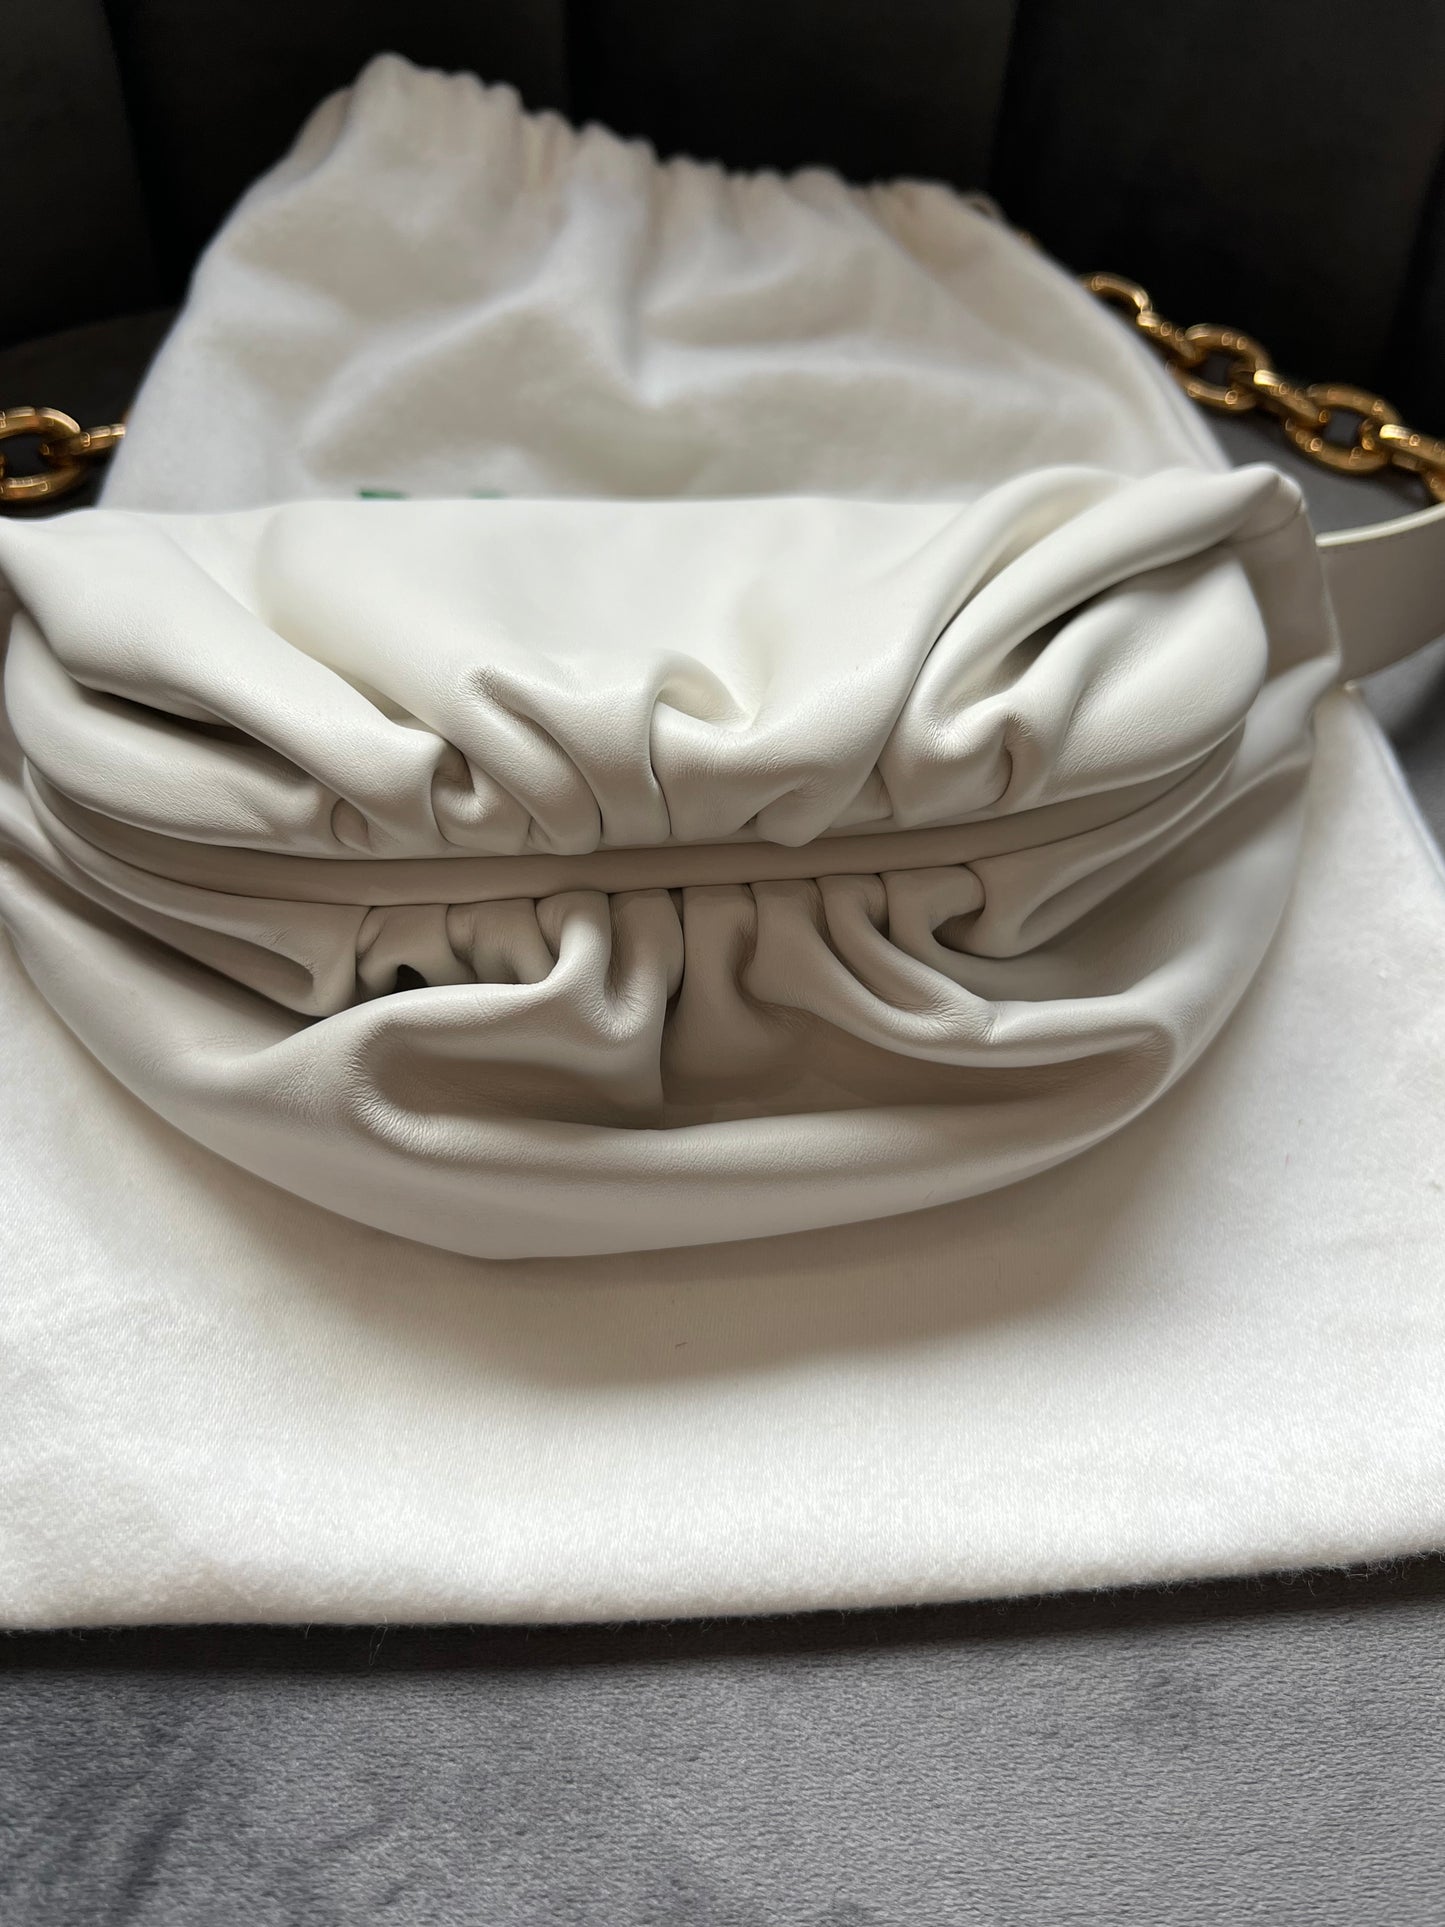 Bottega Veneta white chain pouch